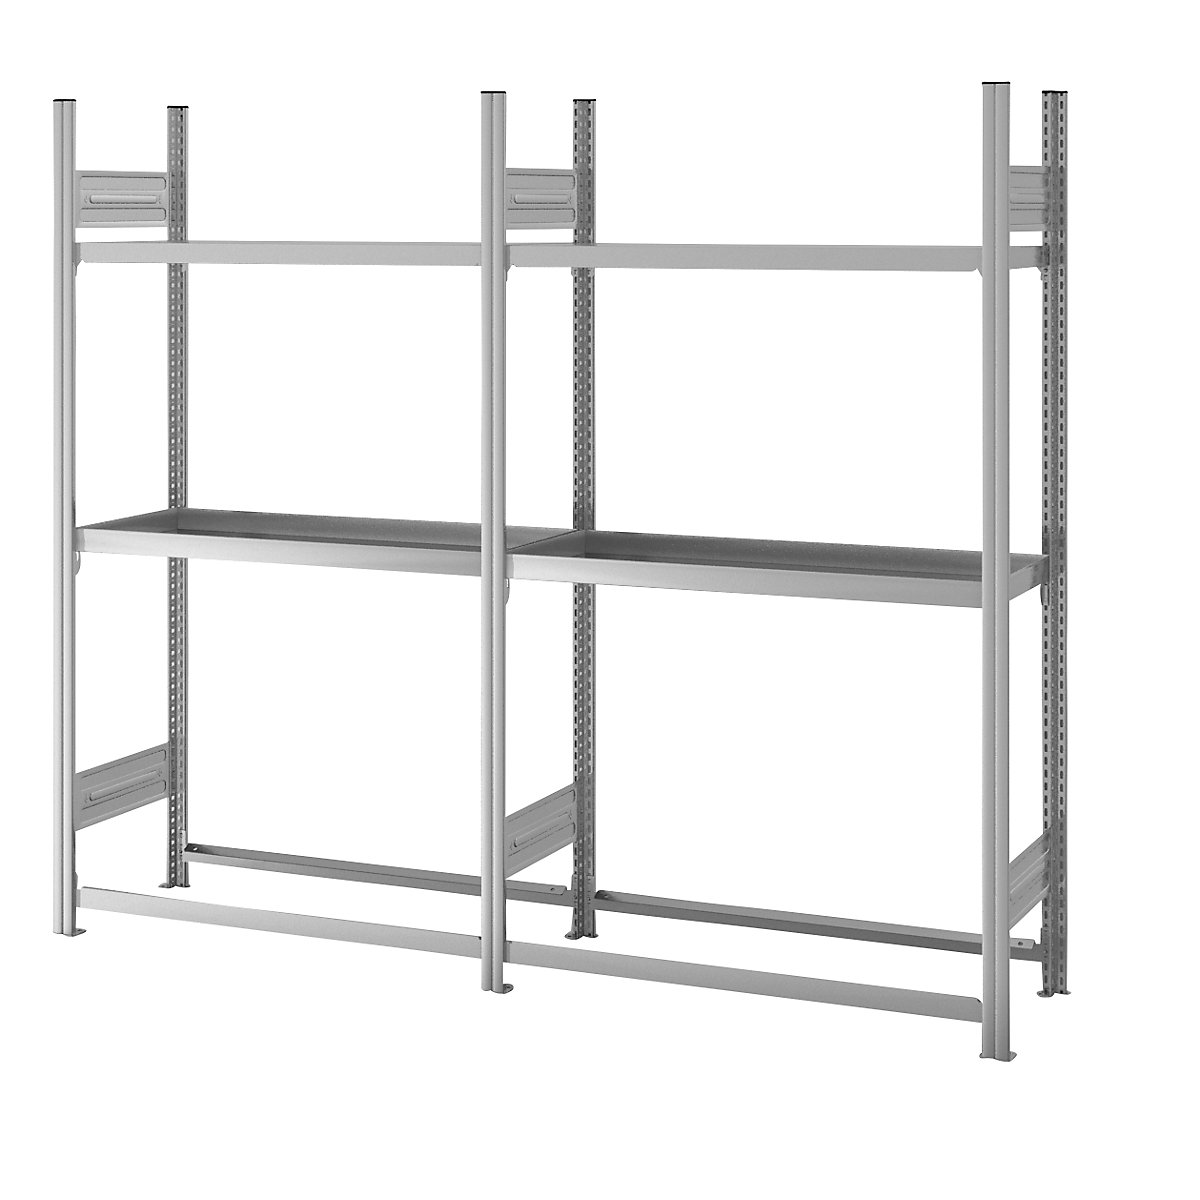 Warehouse and workshop multifunction shelf unit – hofe (Product illustration 3)